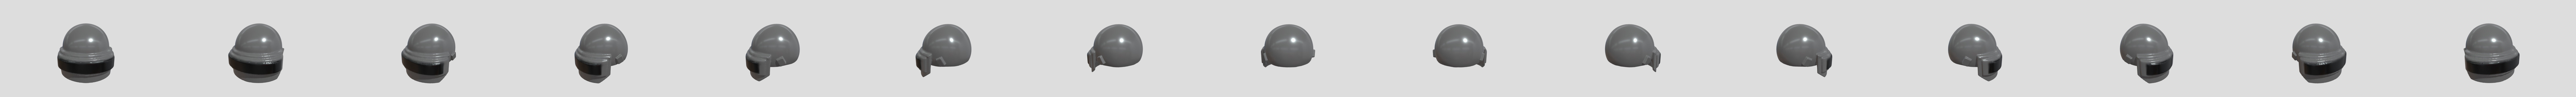 PUBG Level 3 Helmet - Download Free 3D model by NikolasAntonio  (@NikolasAntonio) [85dd813]